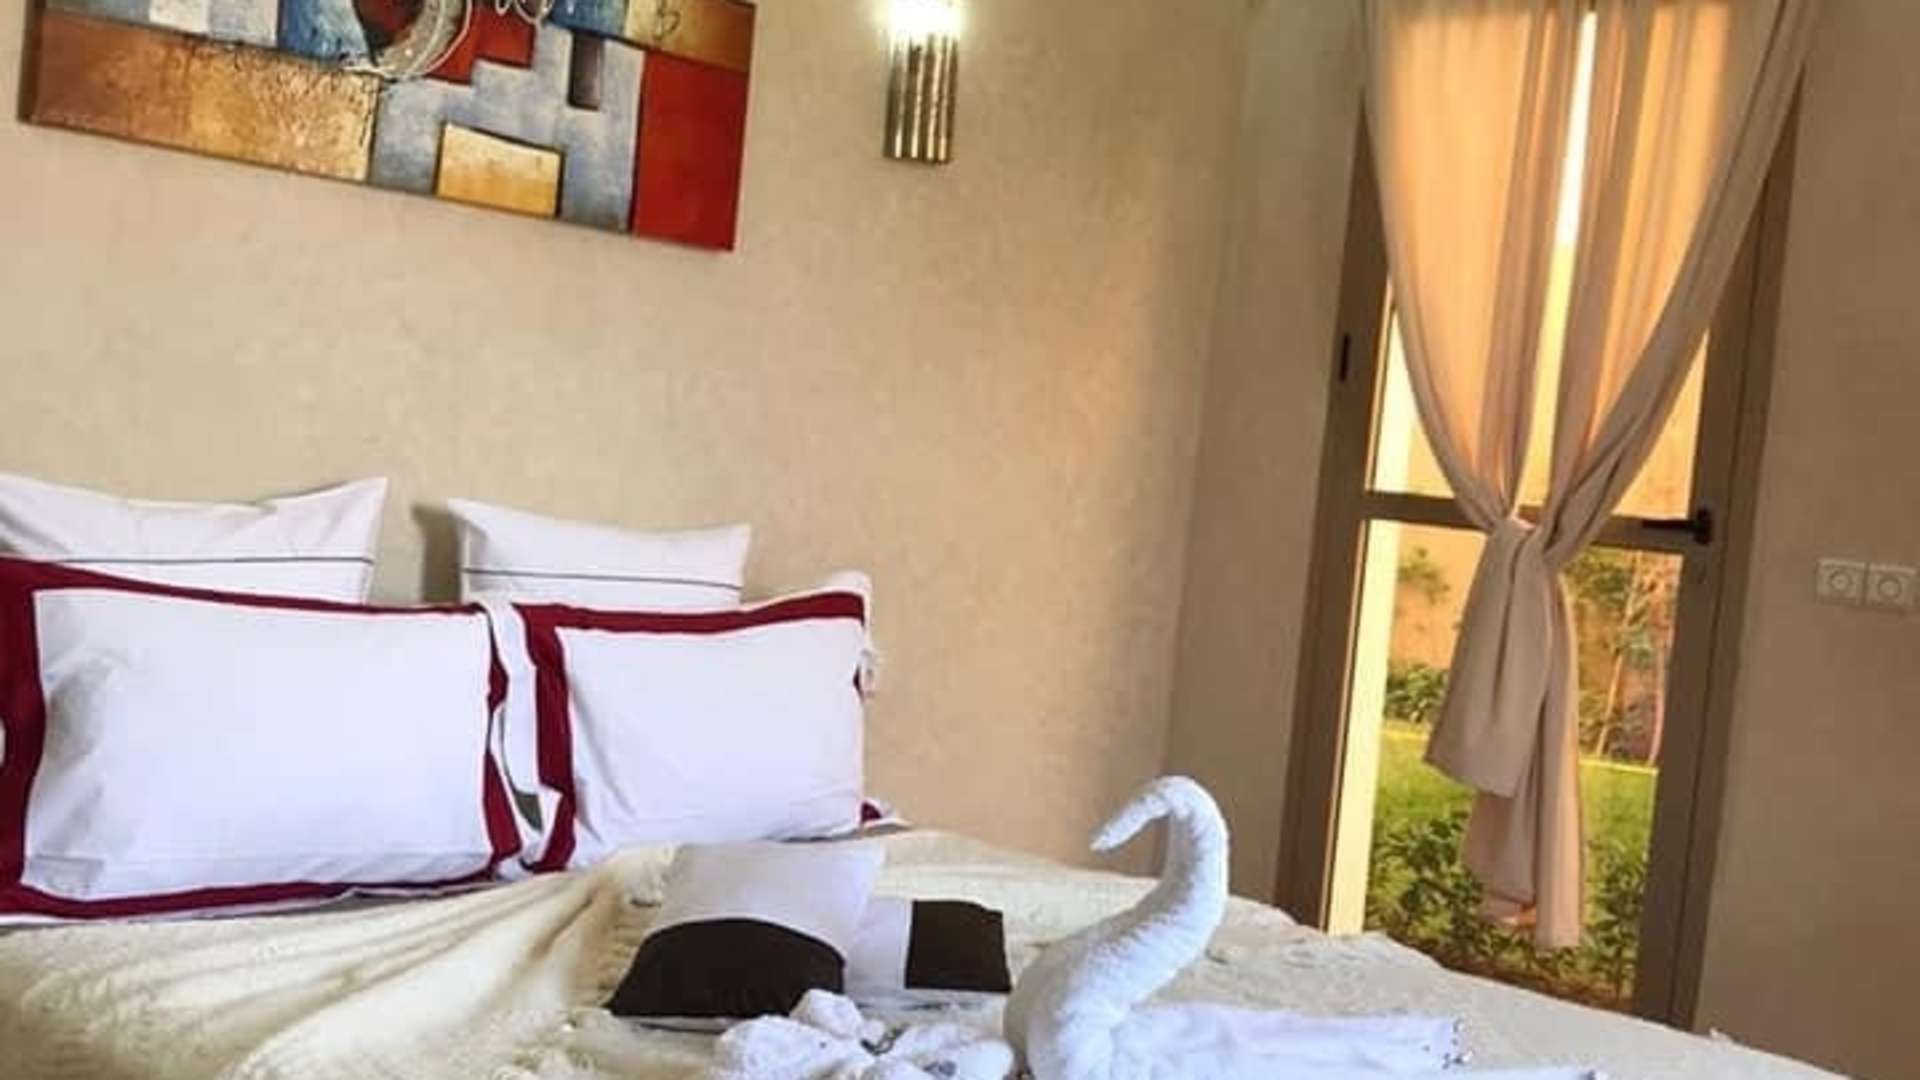 Vente,Villa,Villa de luxe à vendre à Marrakech. 4 belles chambres. Piscine et air conditionné,Marrakech,Route Amizmiz